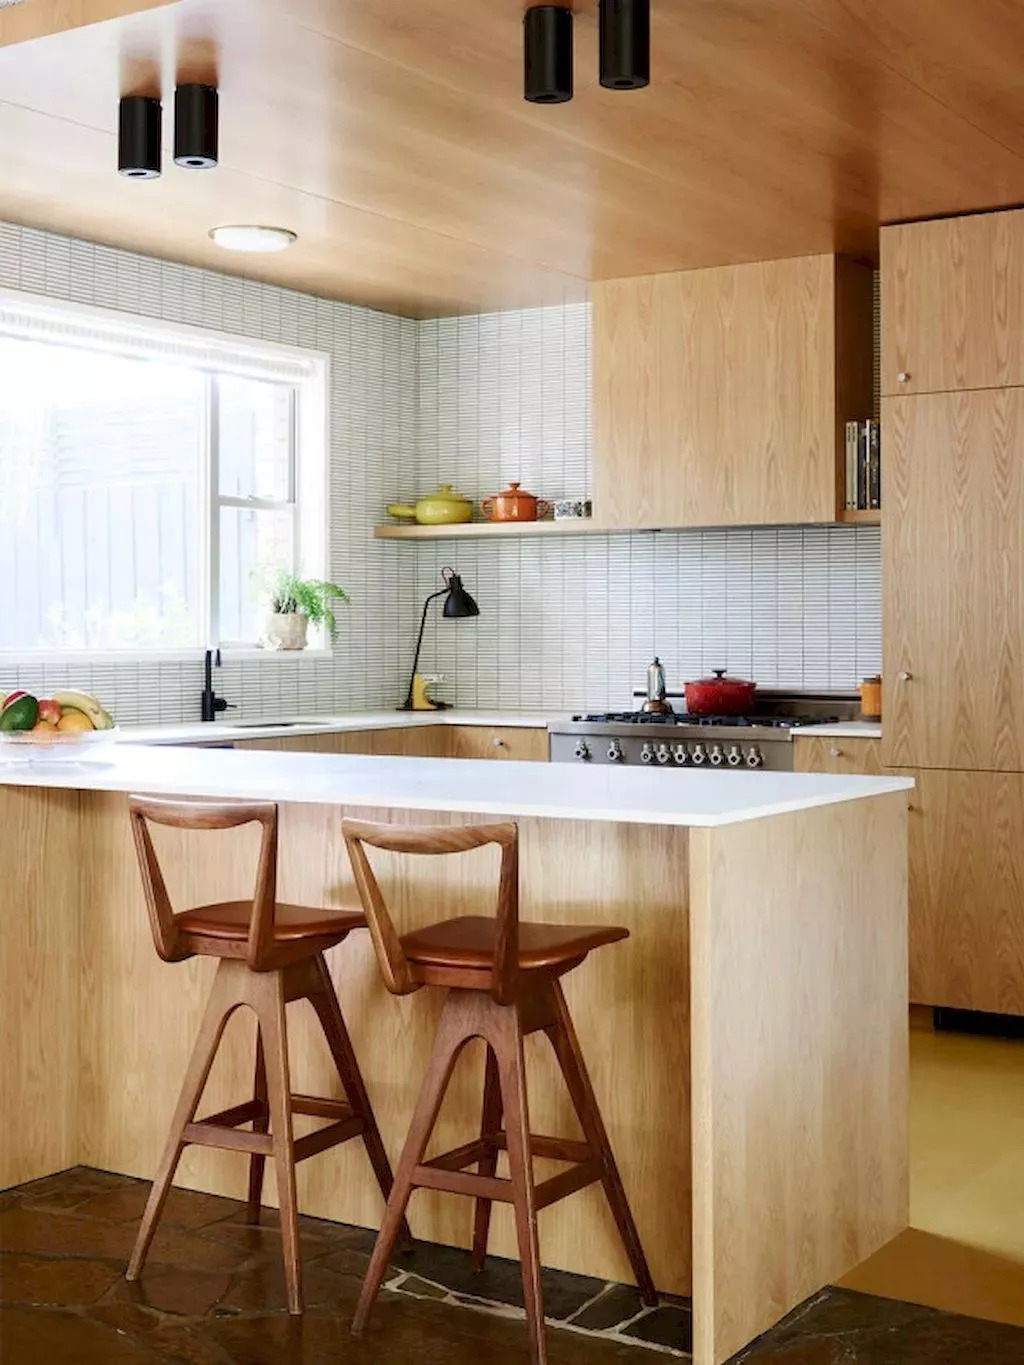 2019时尚冷色系开放式厨房中岛吧台设计效果图片_别墅设计图